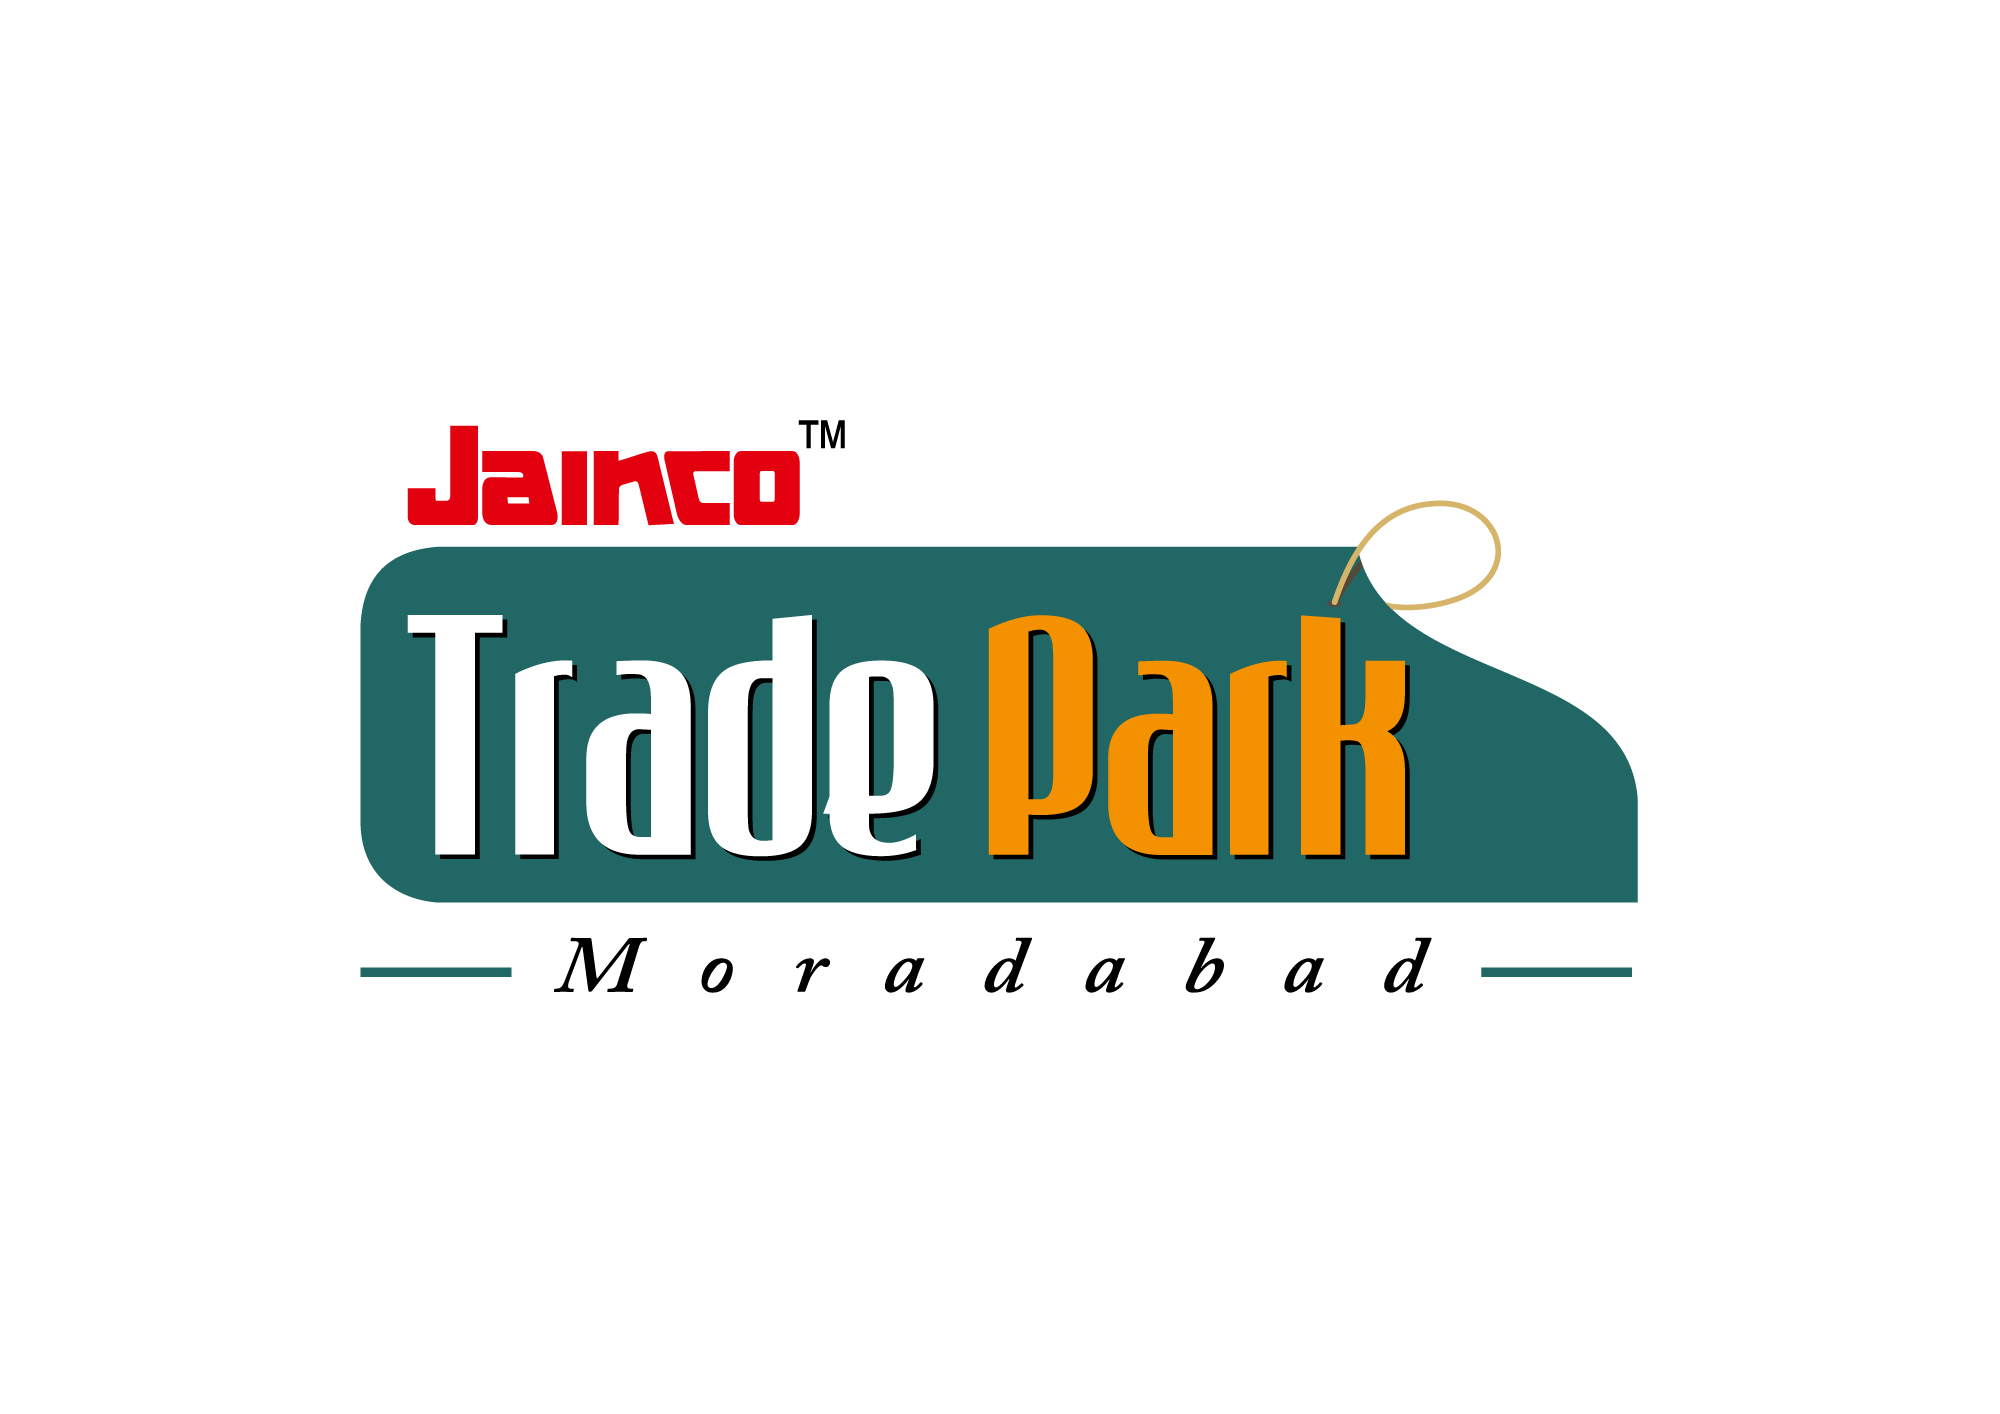 Jainco Trade Park